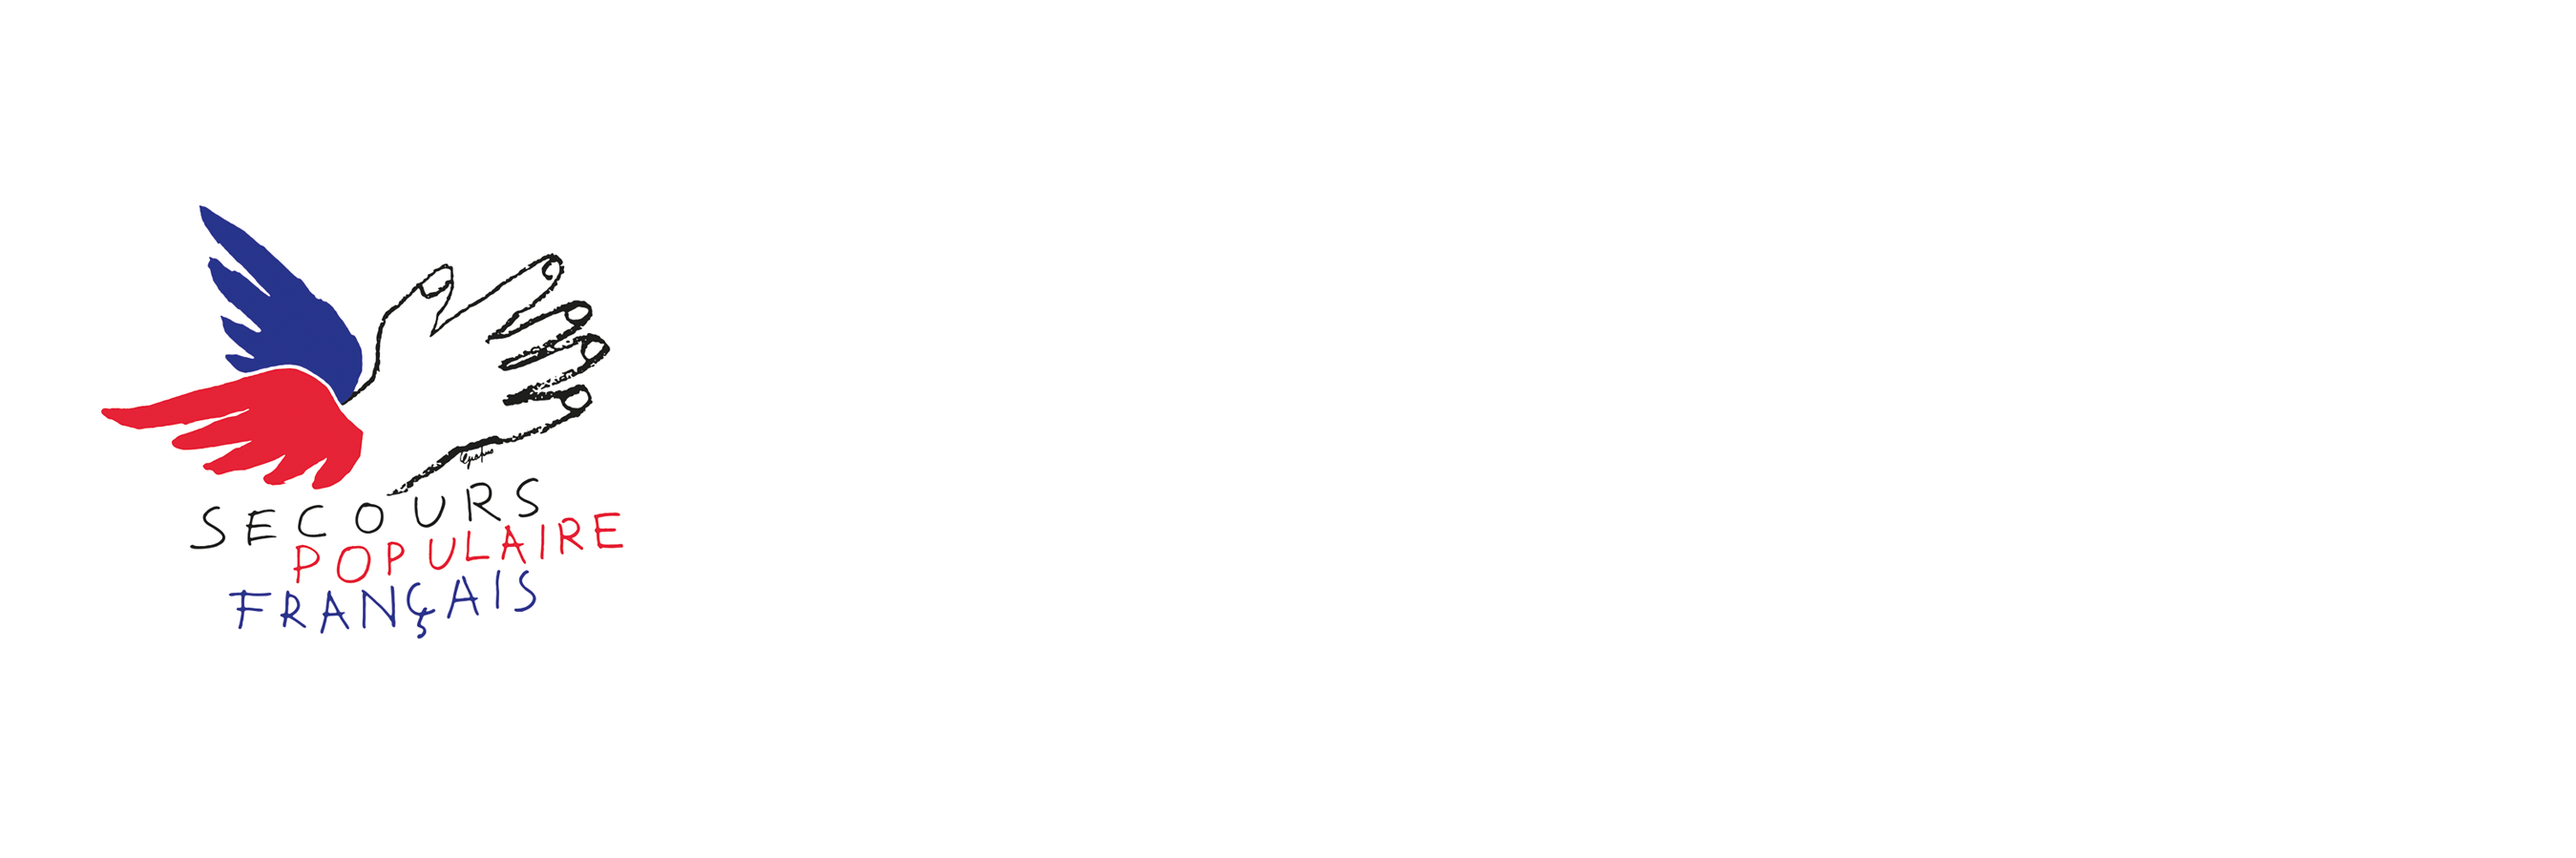 Secours populaire de Paris